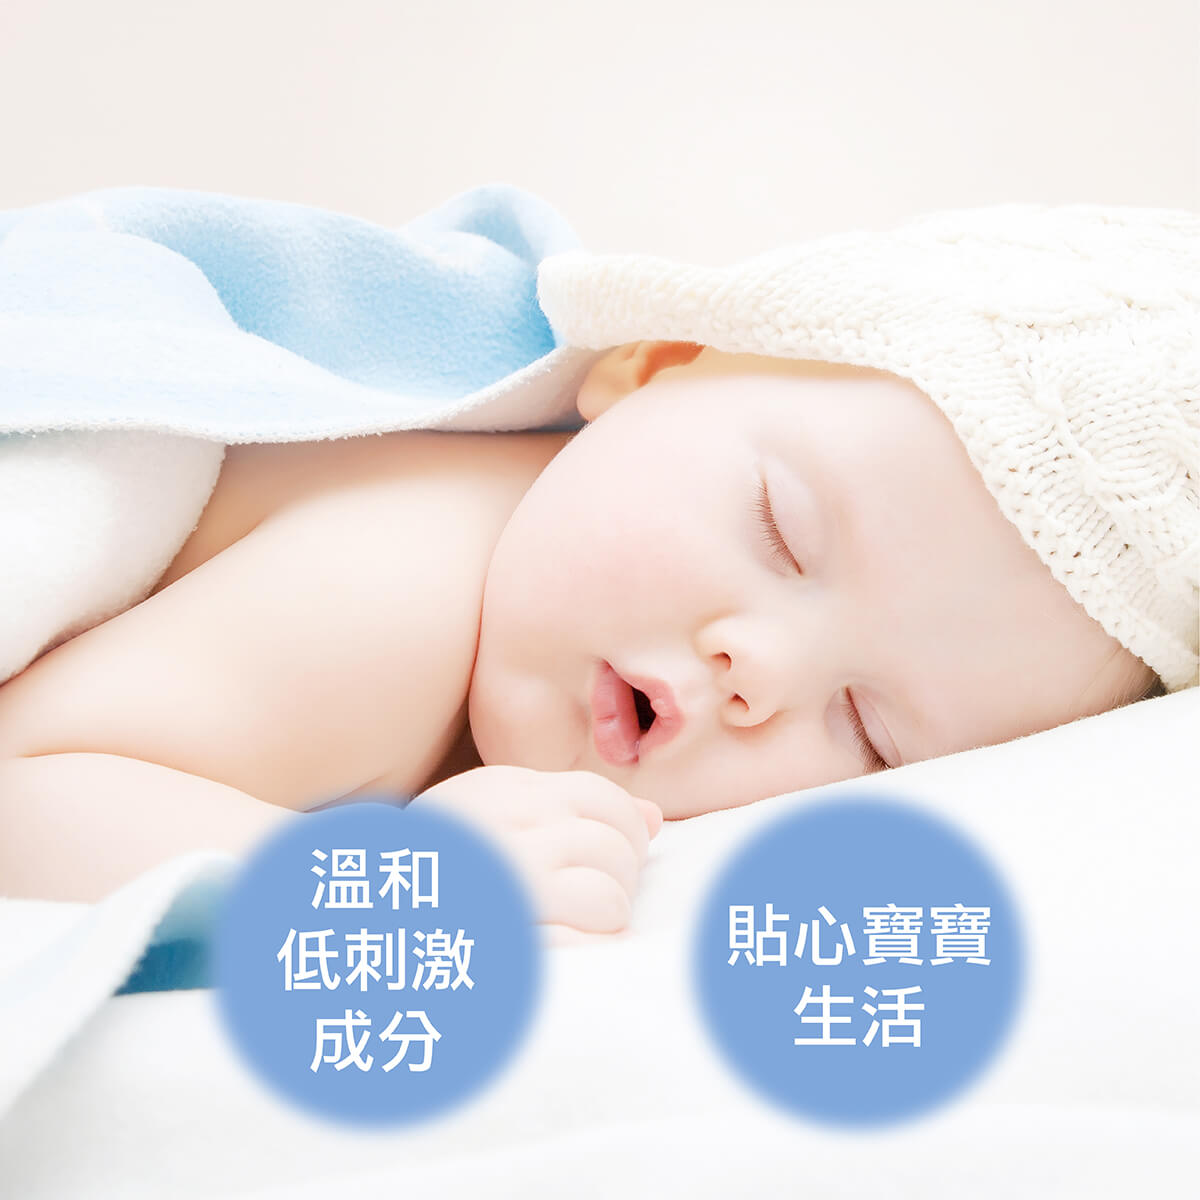 法國 Douce Nature 地恩 寶寶日常清潔用品，呵護寶寶脆弱敏感肌膚，低泡沫的溫和成分清潔寶寶的肌膚，產品皆有指標性認證(Ecocert、BIO認證)，安全有保障。